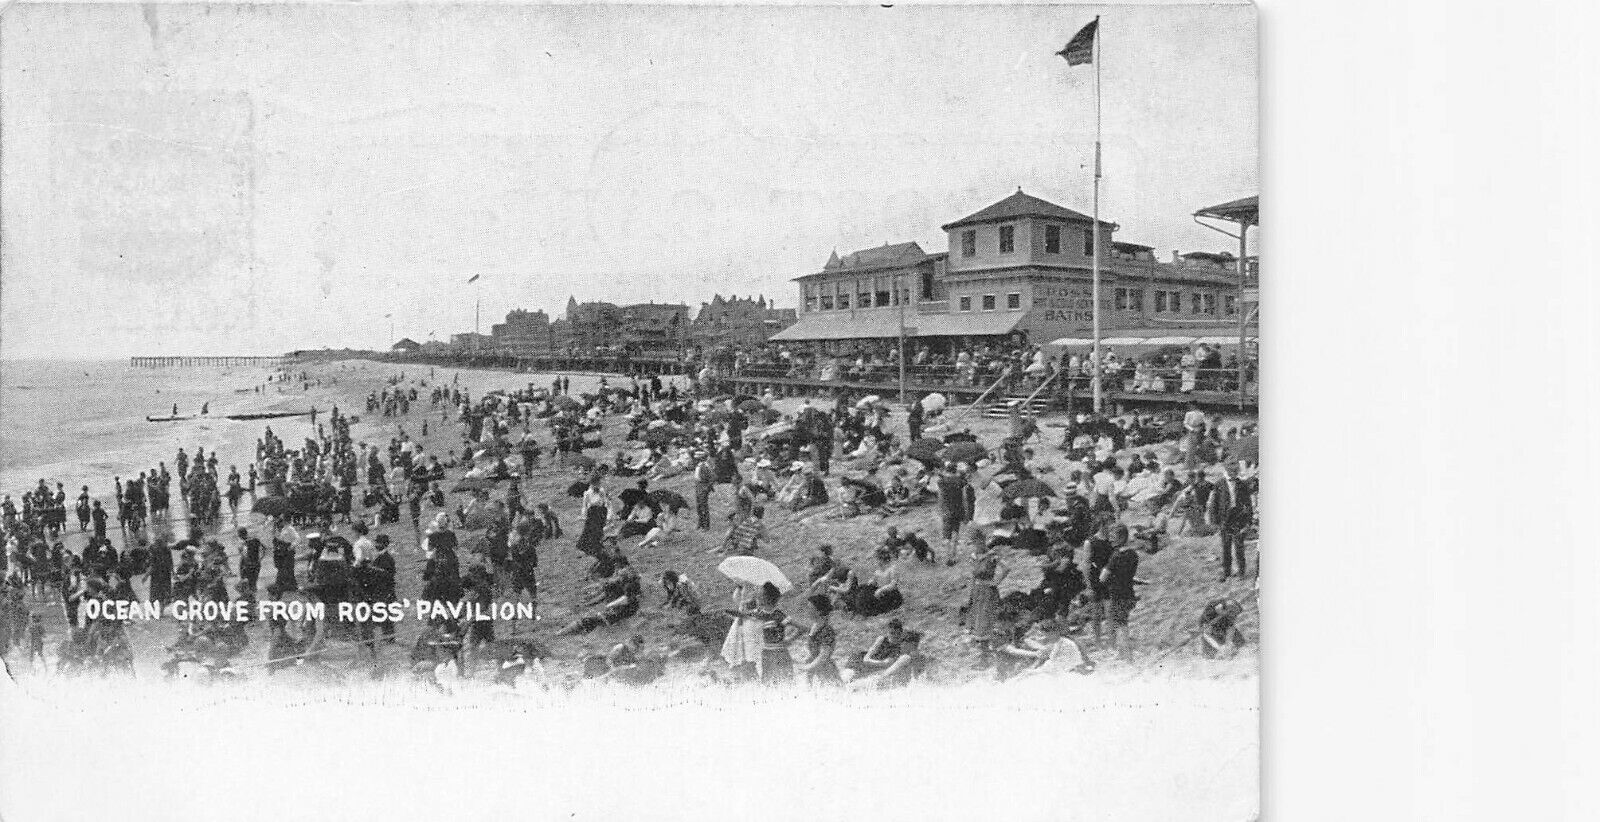 View of Ocean Grove from Ross Pavilion, Ocean Grove, N.J., 1911 postcard, used